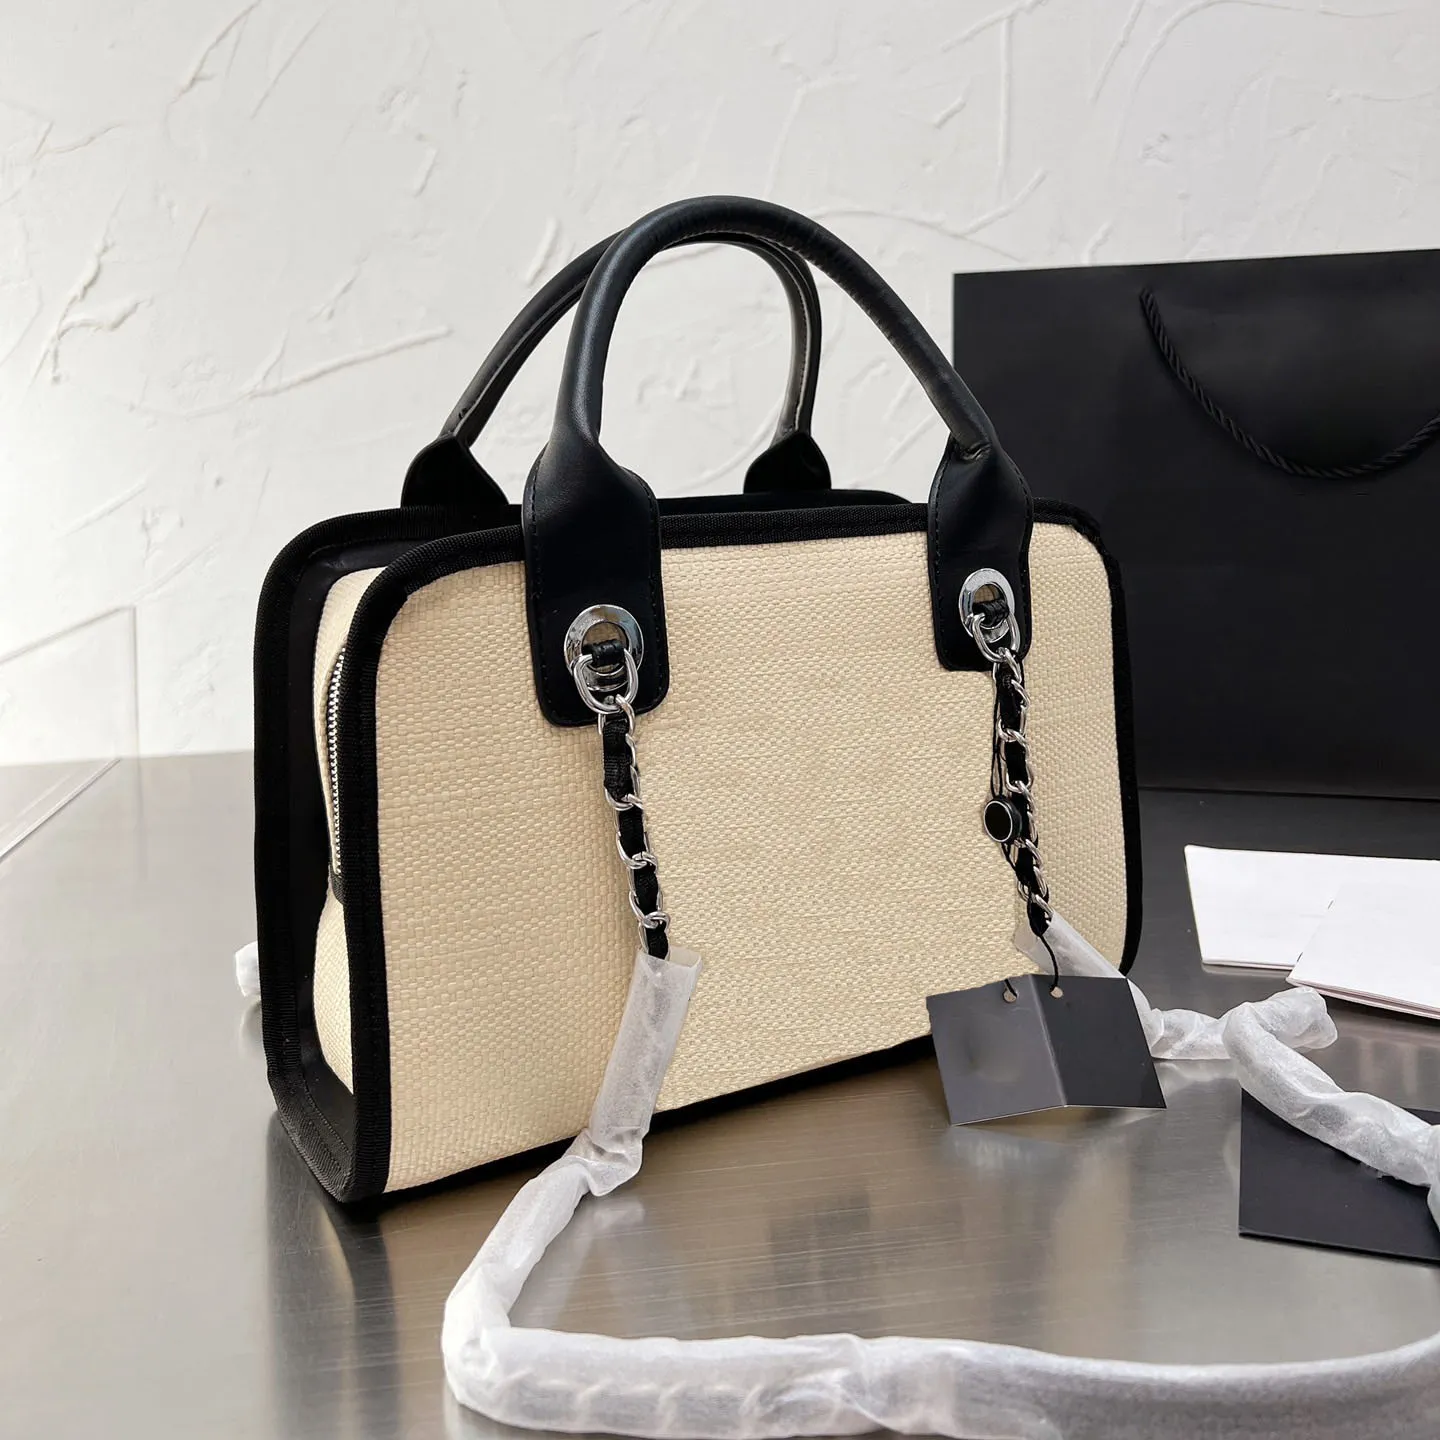 Оптовые дизайнеры торговые сумки модные сумки сумки высочайшего качества женщин роскоши на плечах сумки для торговых точек сумочка сумочка большая мощность пляжный кошелек